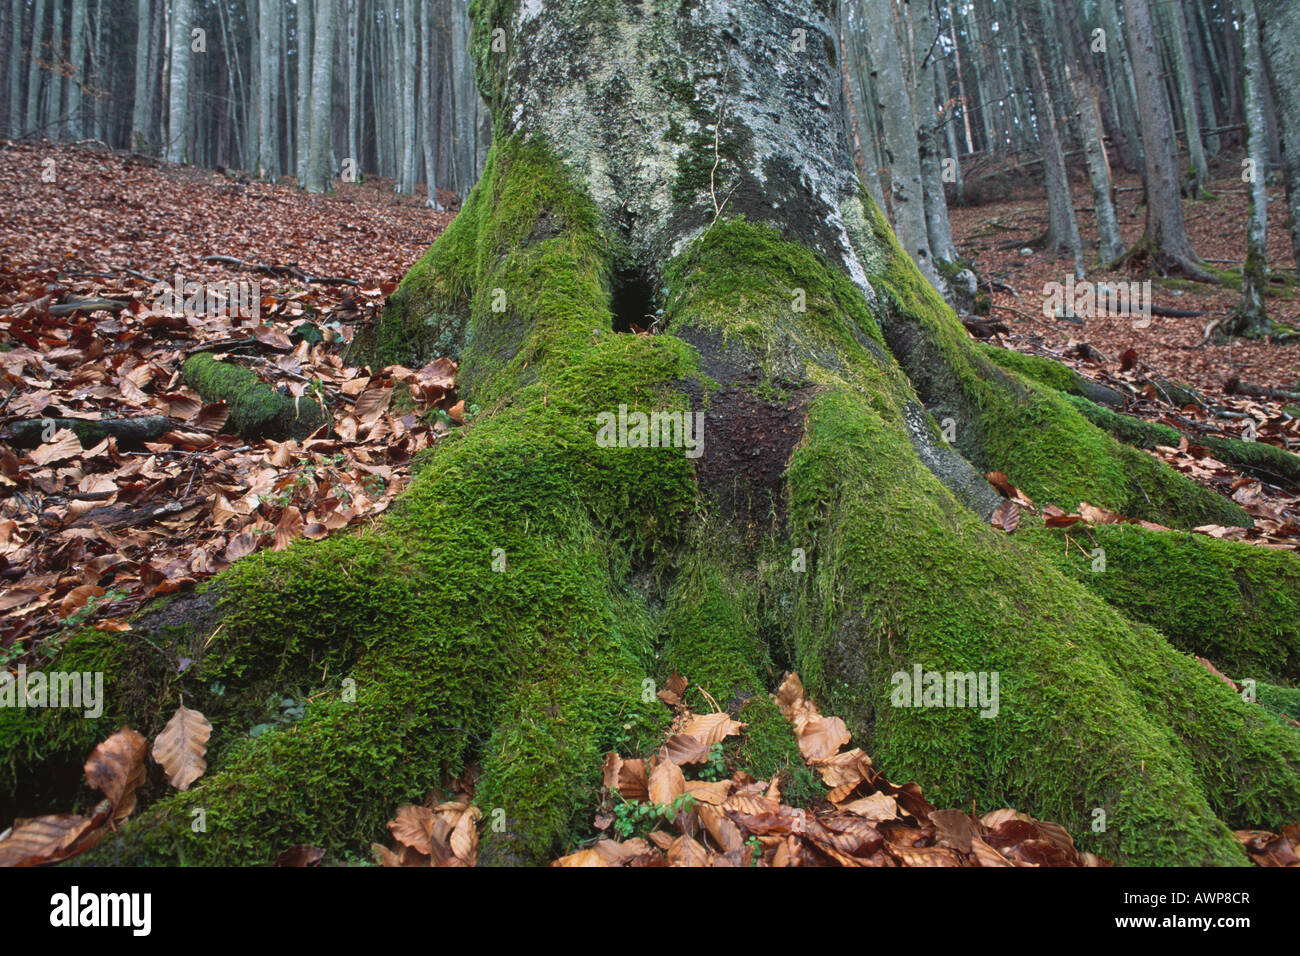 Moosbewachsenen Baumstamm eine Rotbuche (Fagus Sylvatica) in einem Buche Wald, Nord-Tirol, Österreich, Europa Stockfoto